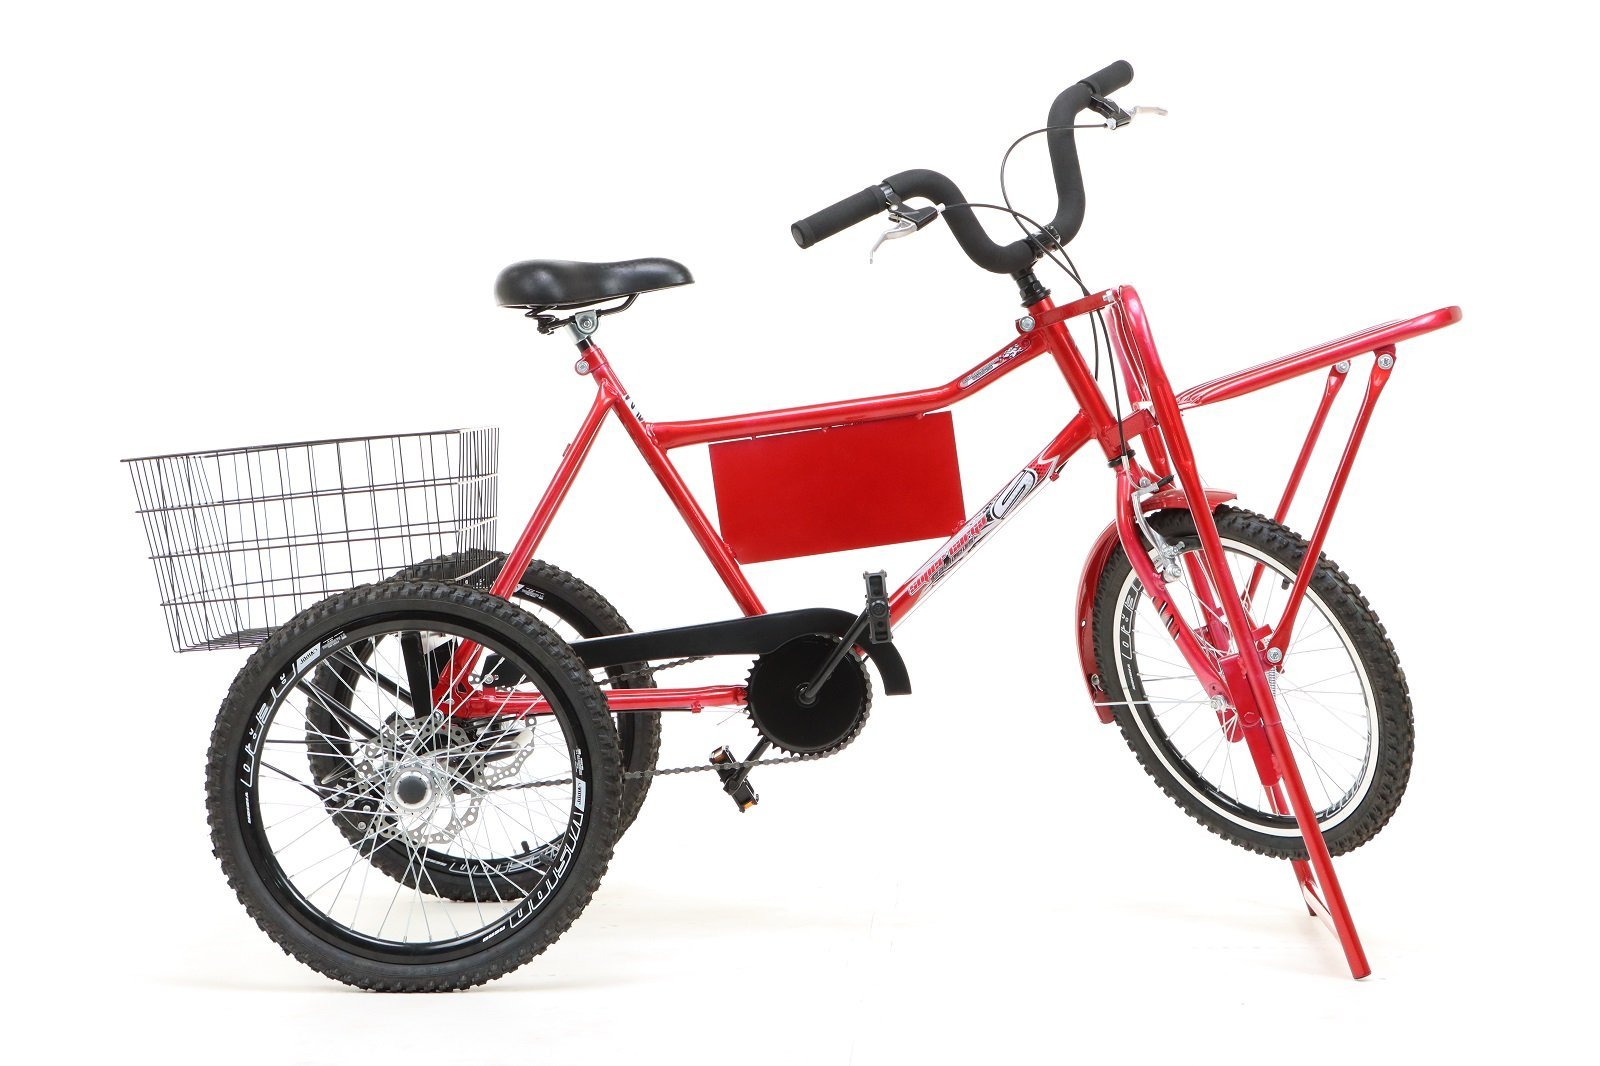 Triciclo Motoca Infantil Passeio com Empurrador Pedal Luz Som Capota  Importway BW-003 Azul - BEST SALE SHOP